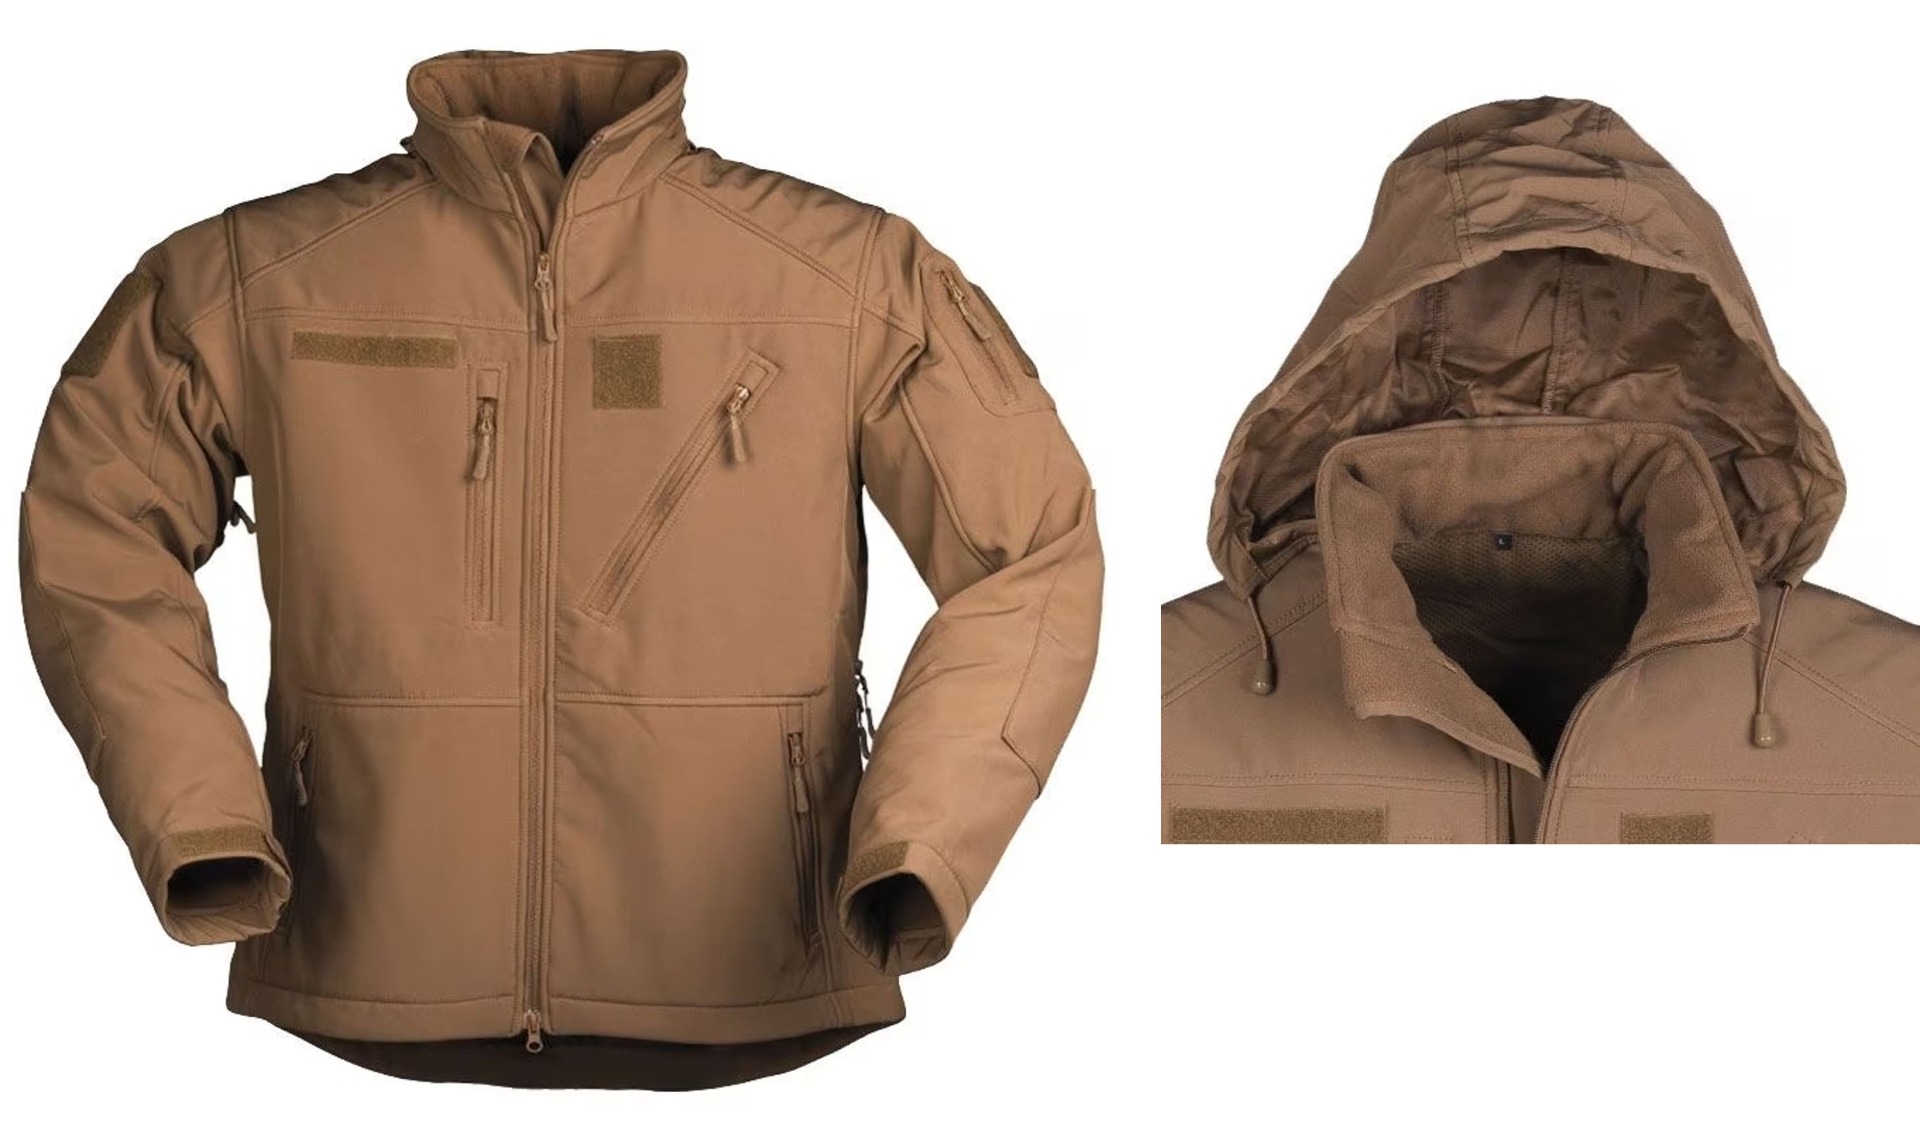 Odkrijte vrhunsko vojaško 3-slojno softshell jakno, ki je nepremočljiva, odporna proti vetru in udobna. Idealna za aktivnosti na prostem v dežju in snegu. Kliknite in si jo zagotovite že danes!